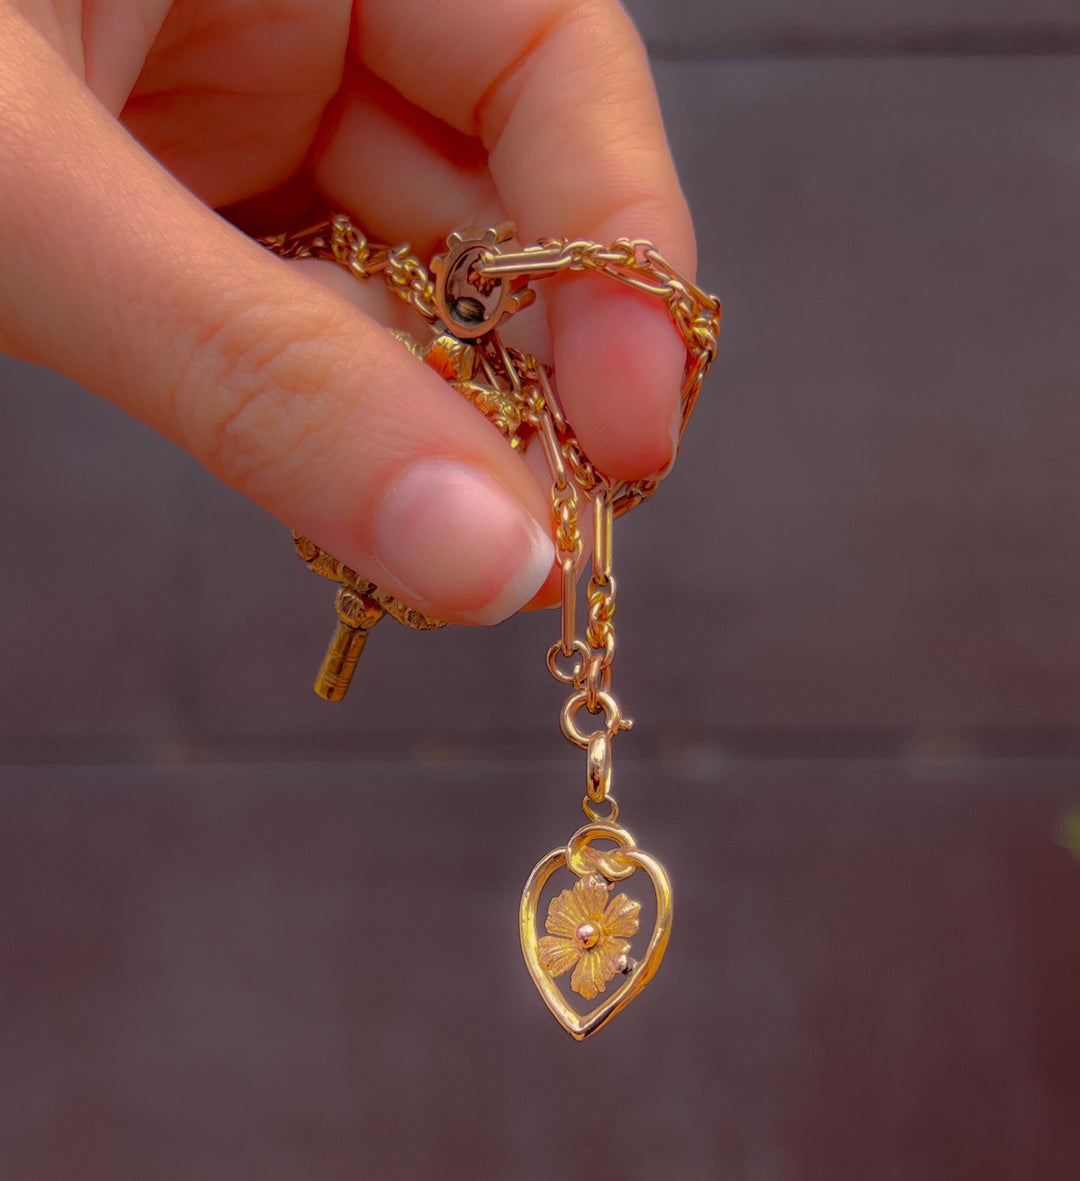 9k Art Nouveau Heart with Love Knot